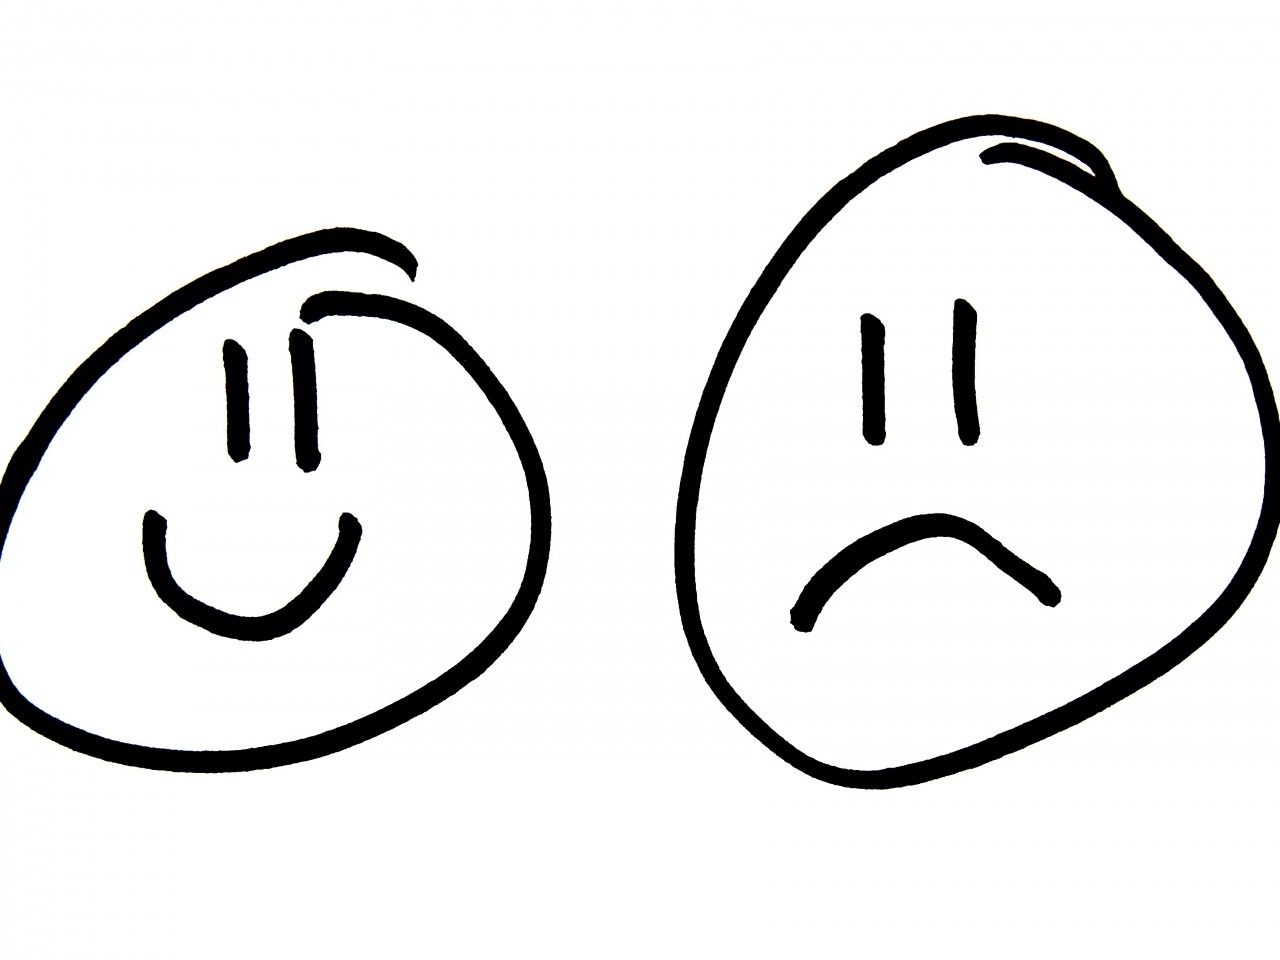 Sad Human Face Drawing - photogram